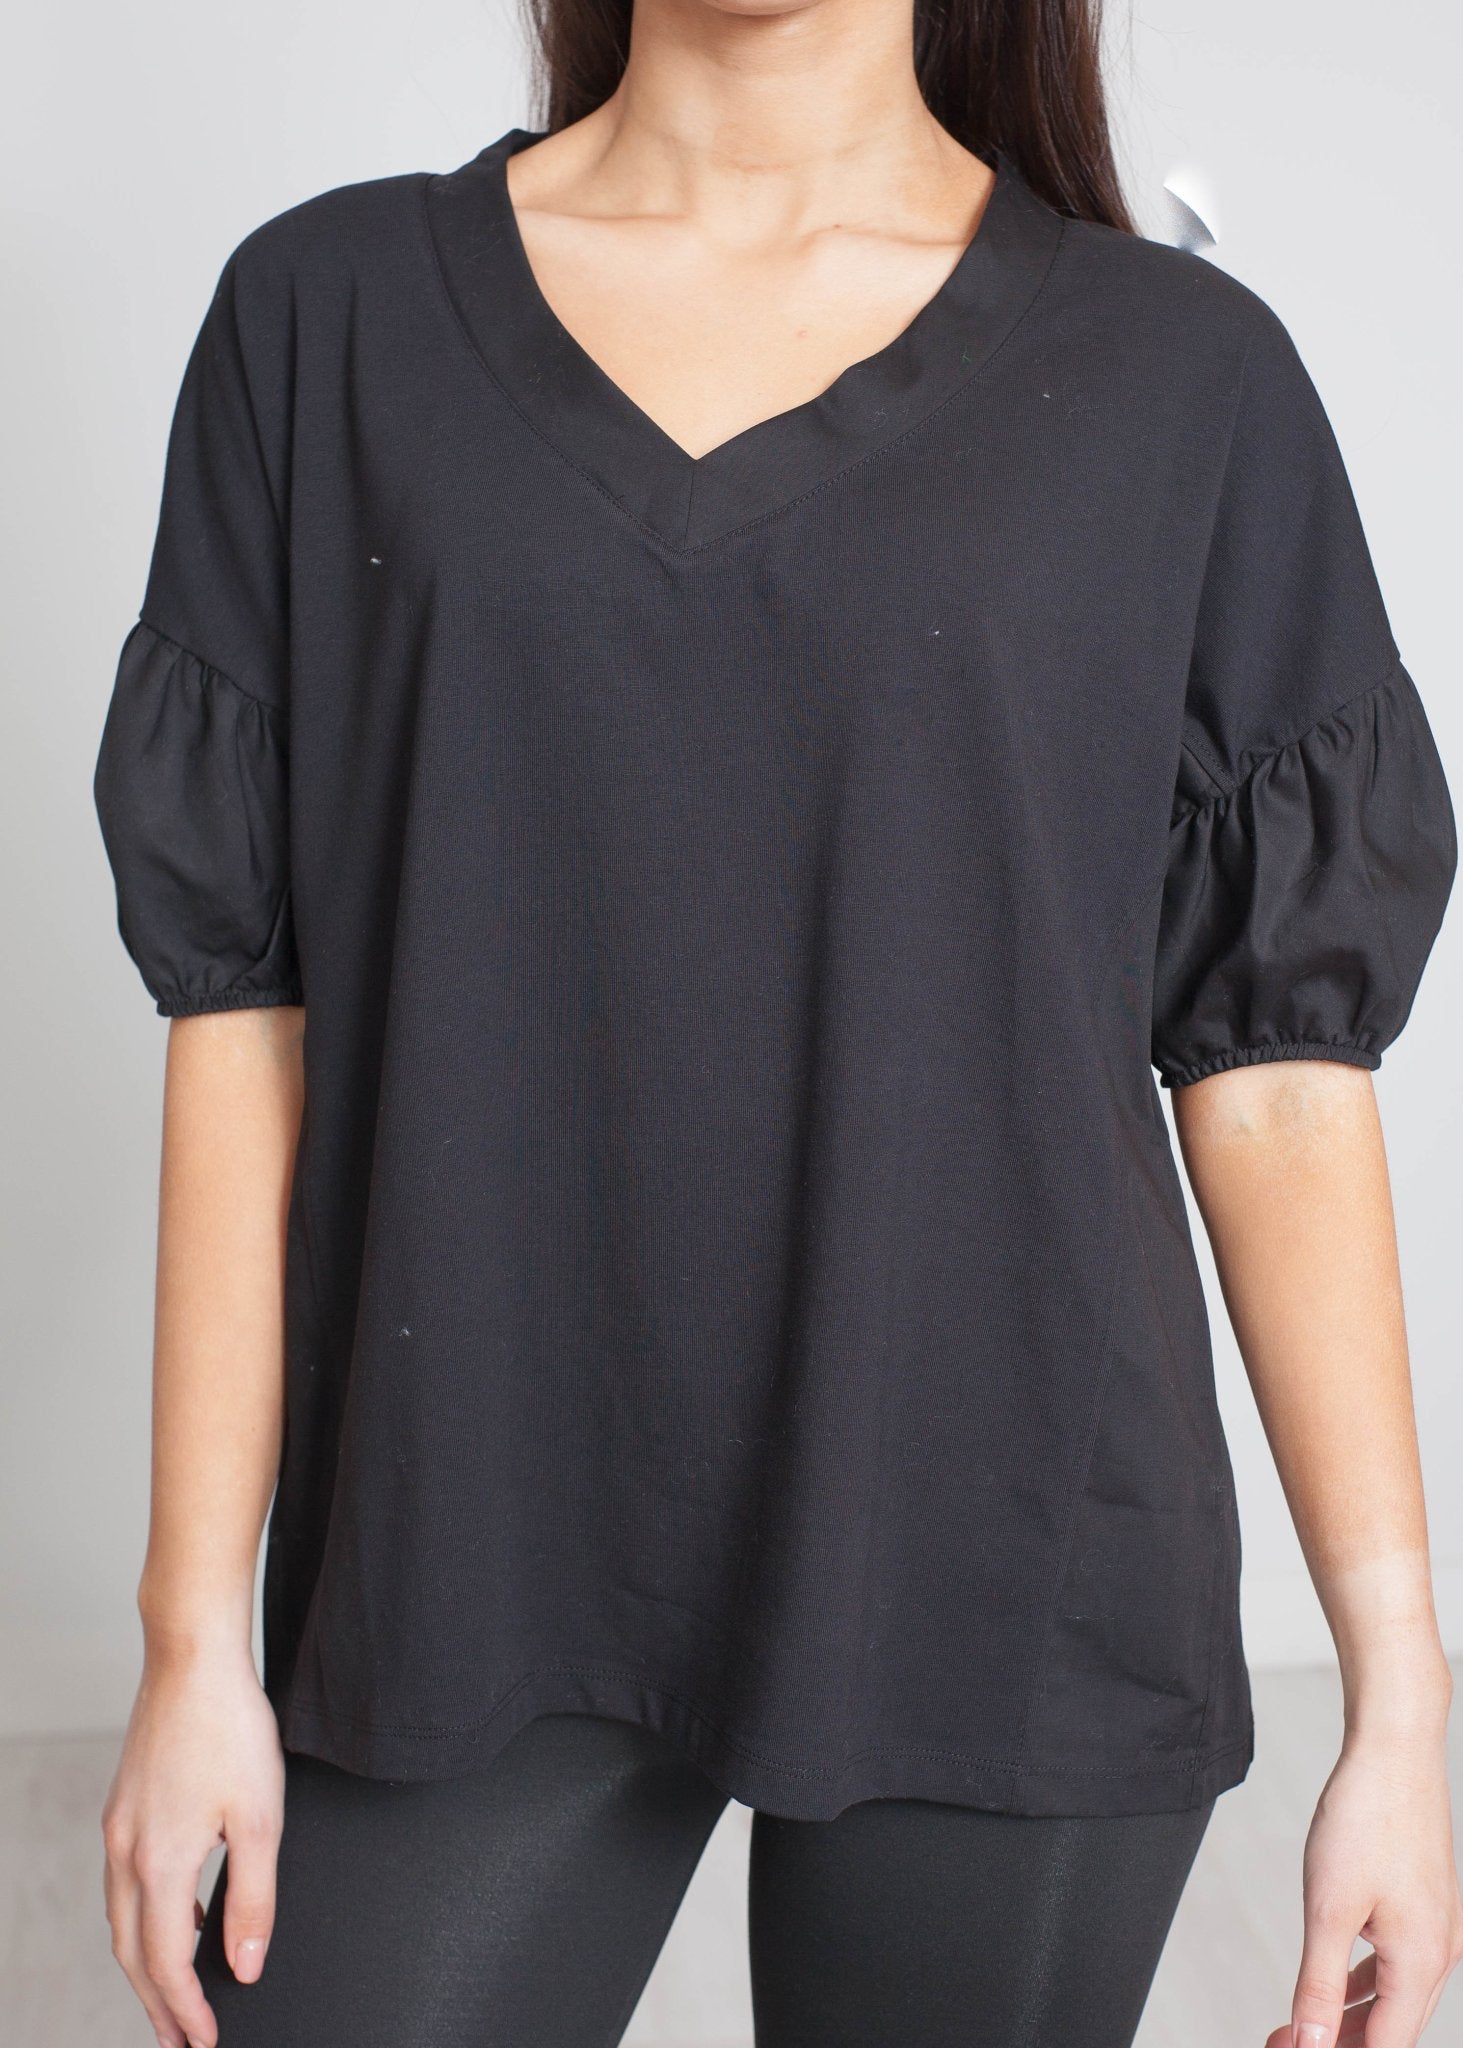 Cleo V-Neck T-Shirt In Black - The Walk in Wardrobe